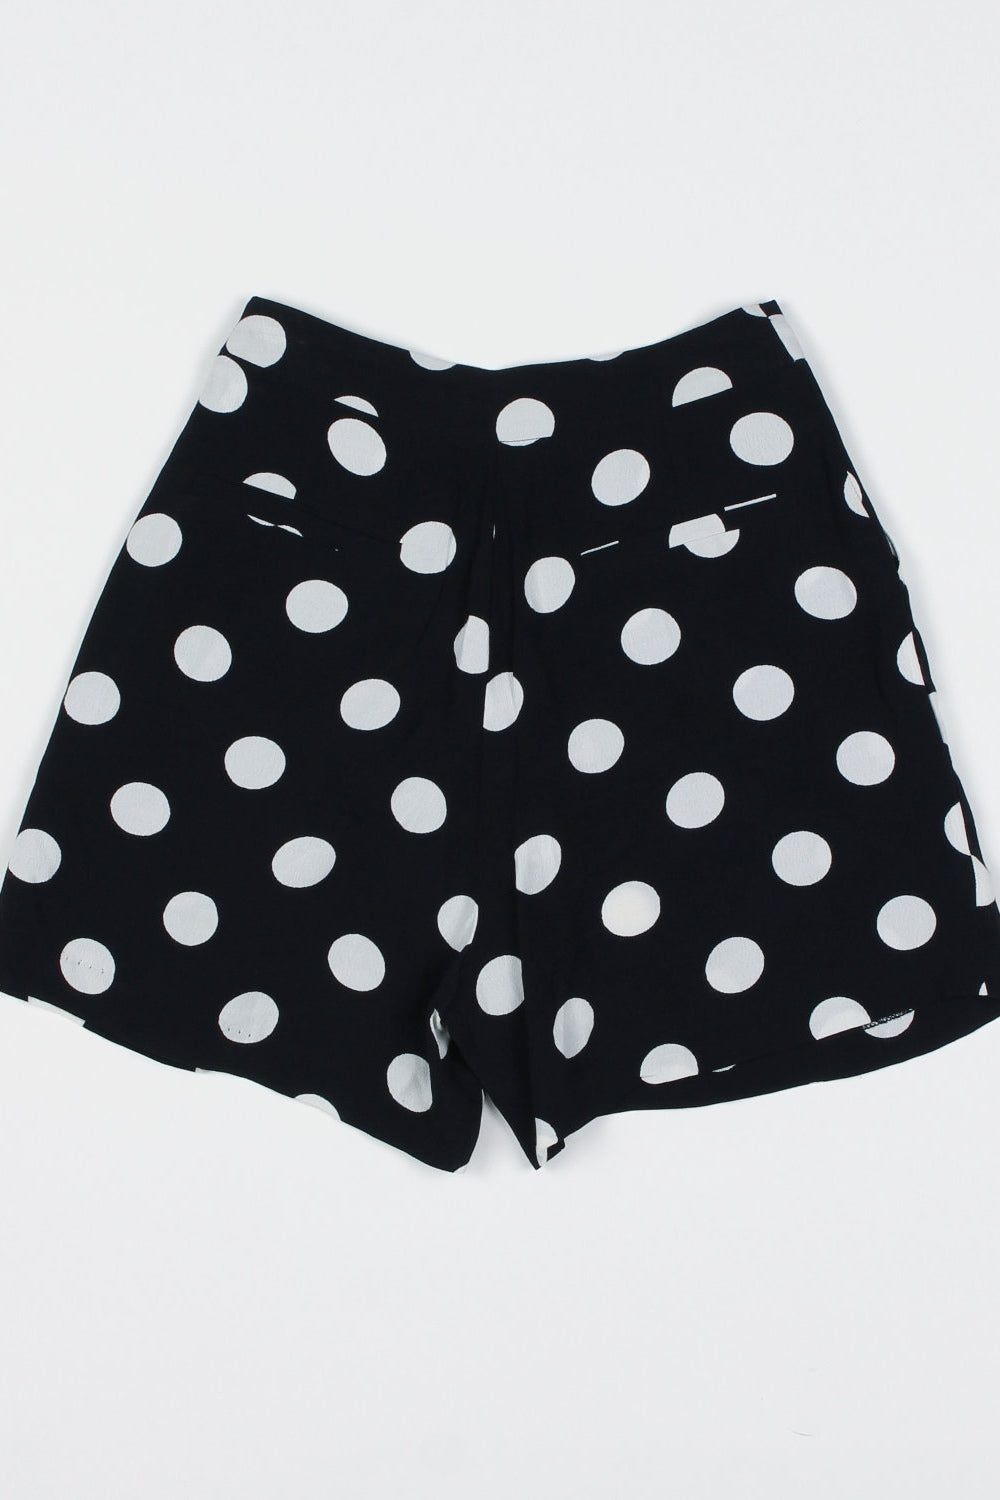 Bardot Black And White Polka Dot Shorts 6